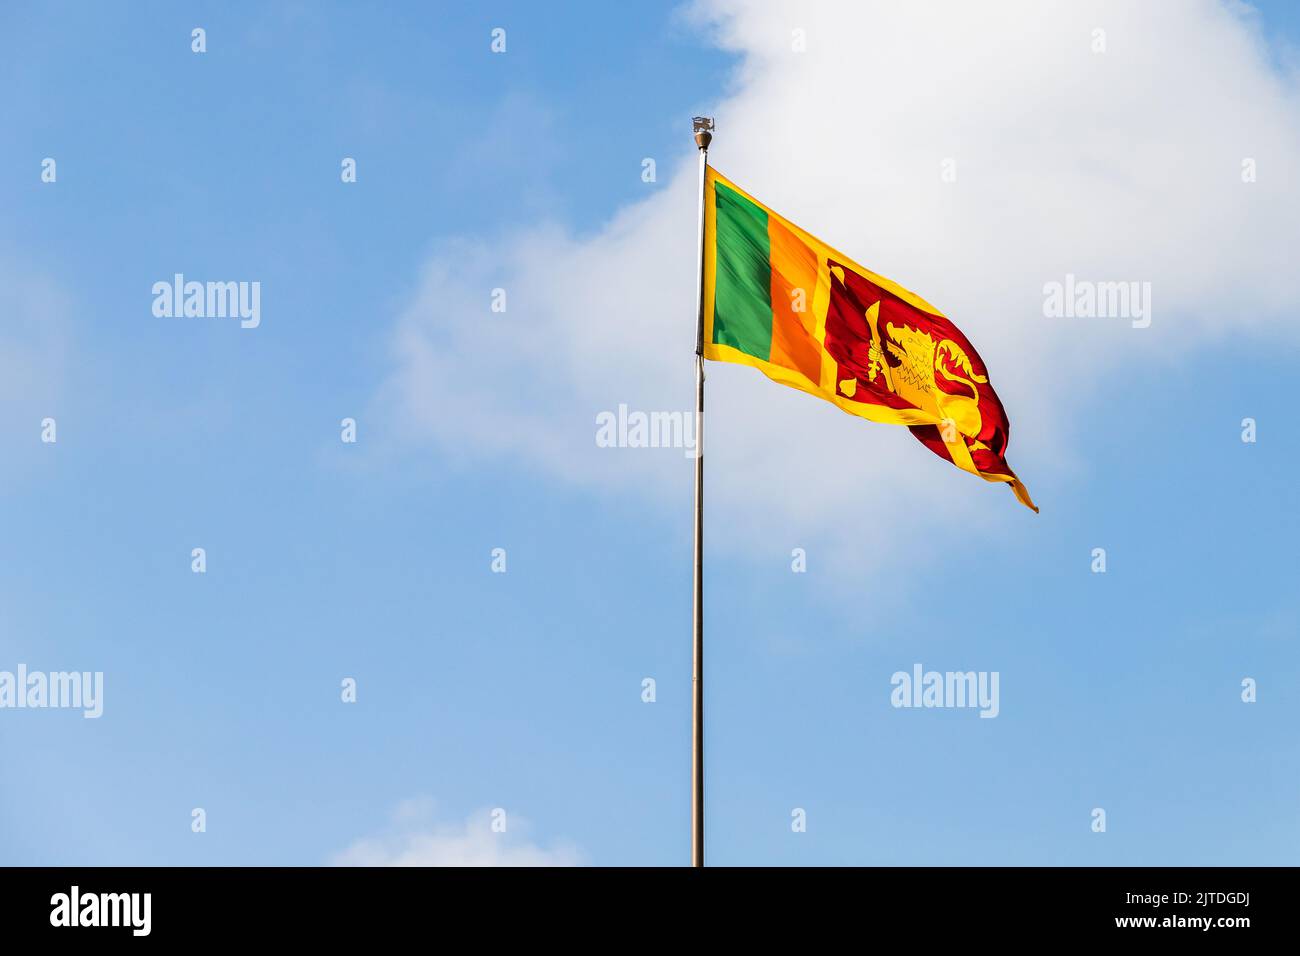 Le drapeau du Sri Lanka ou le drapeau Sinha est sur un mât sous ciel nuageux par une journée ensoleillée Banque D'Images